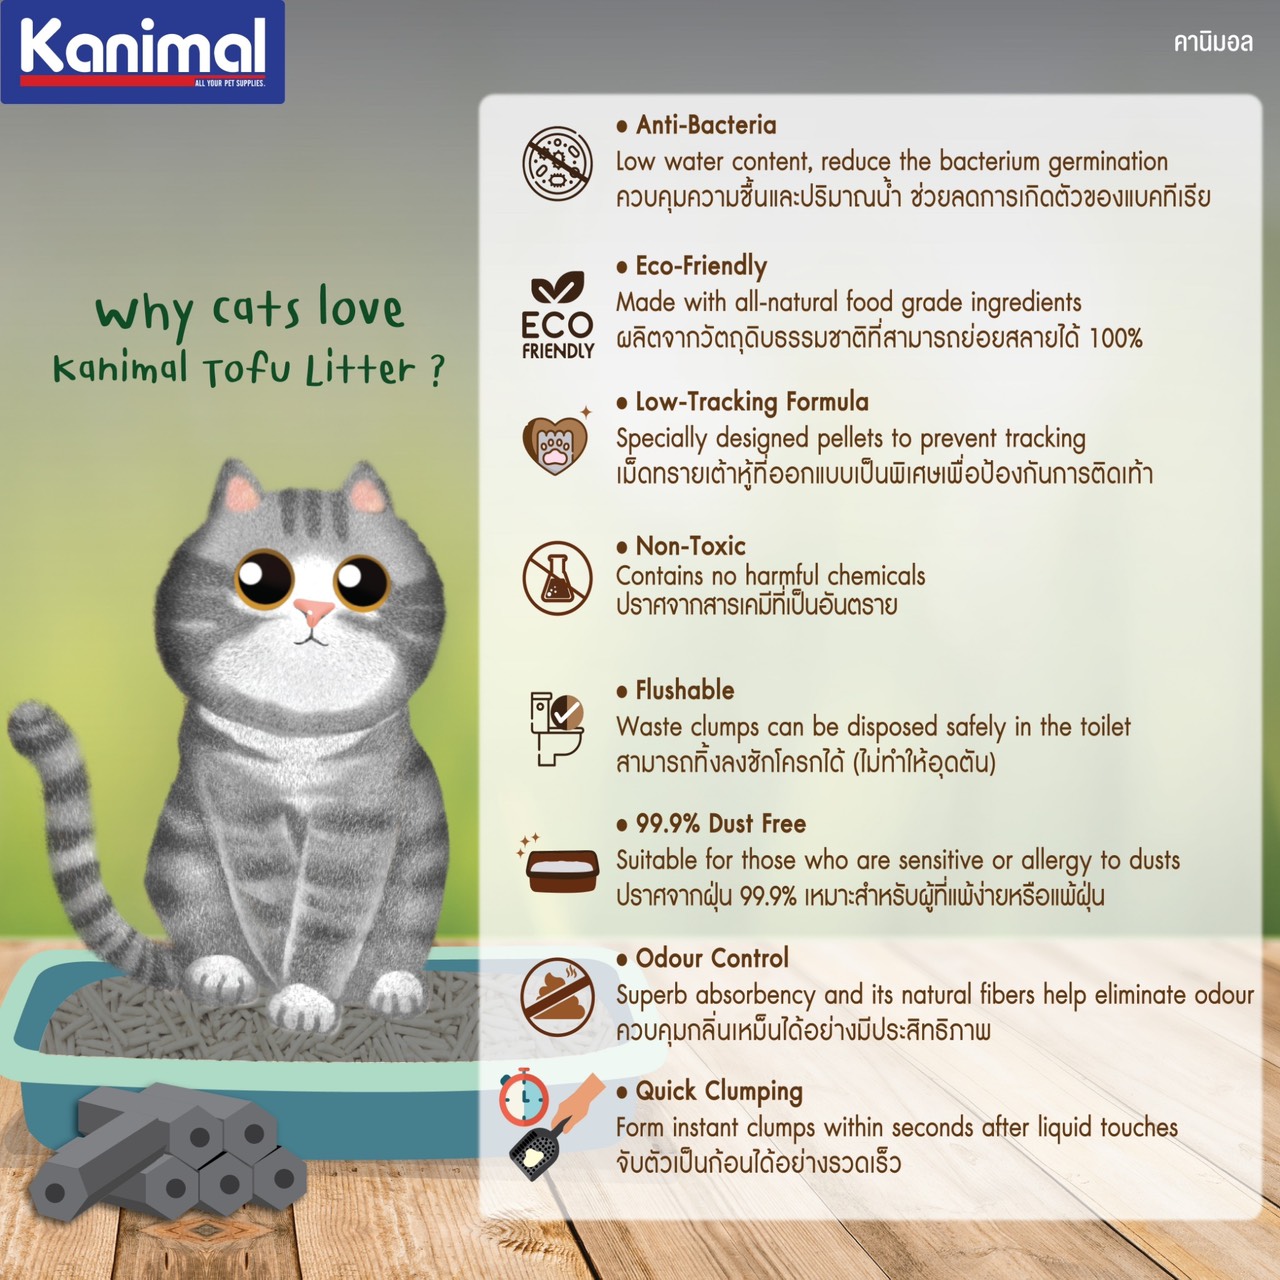 ข้อมูลเพิ่มเติมของ Kanimal Classic 6L. ทรายแมวเต้าหู้ สูตร Classic ผสมคาร์บอน จับตัวเป็นก้อนภายใน 3 วิ ทิ้งชักโครกได้ สำหรับแมวทุกวัย (6+1 ลิตร/2 ถุง)